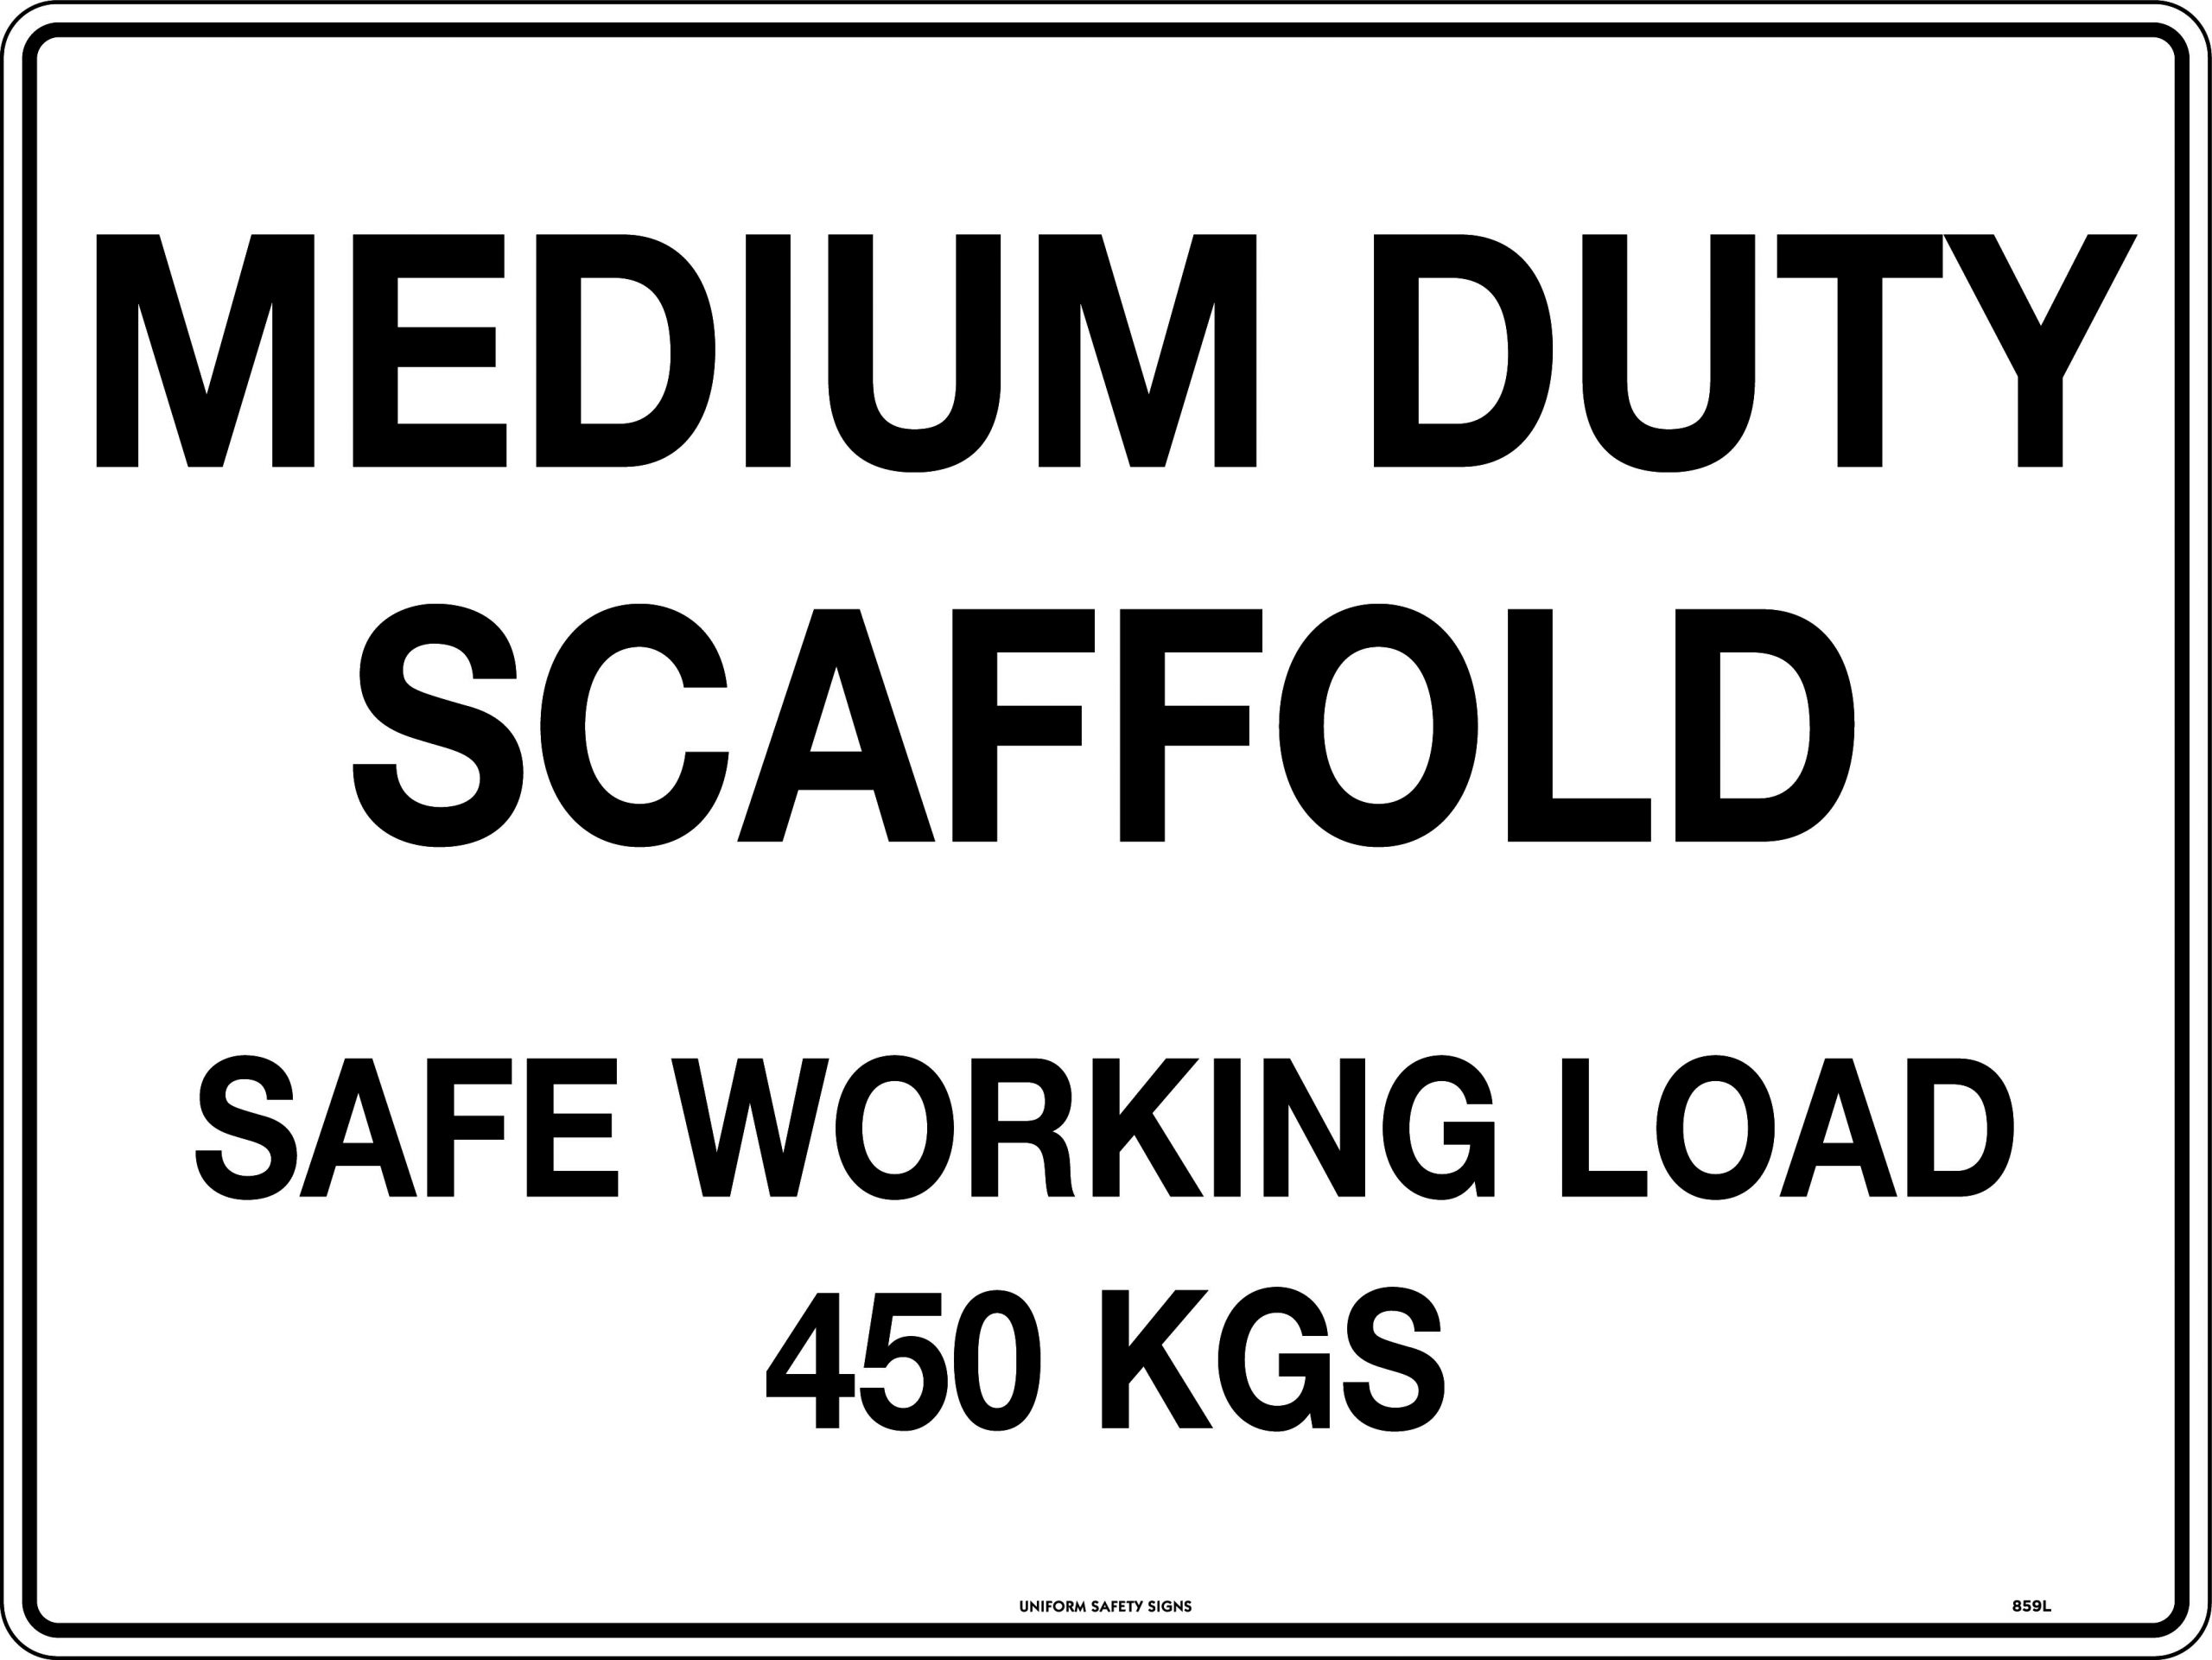 UNIFORM SAFETY 300X225MM METAL MEDIUM DUTY SCAFFOLD SAFE WORKING LOAD